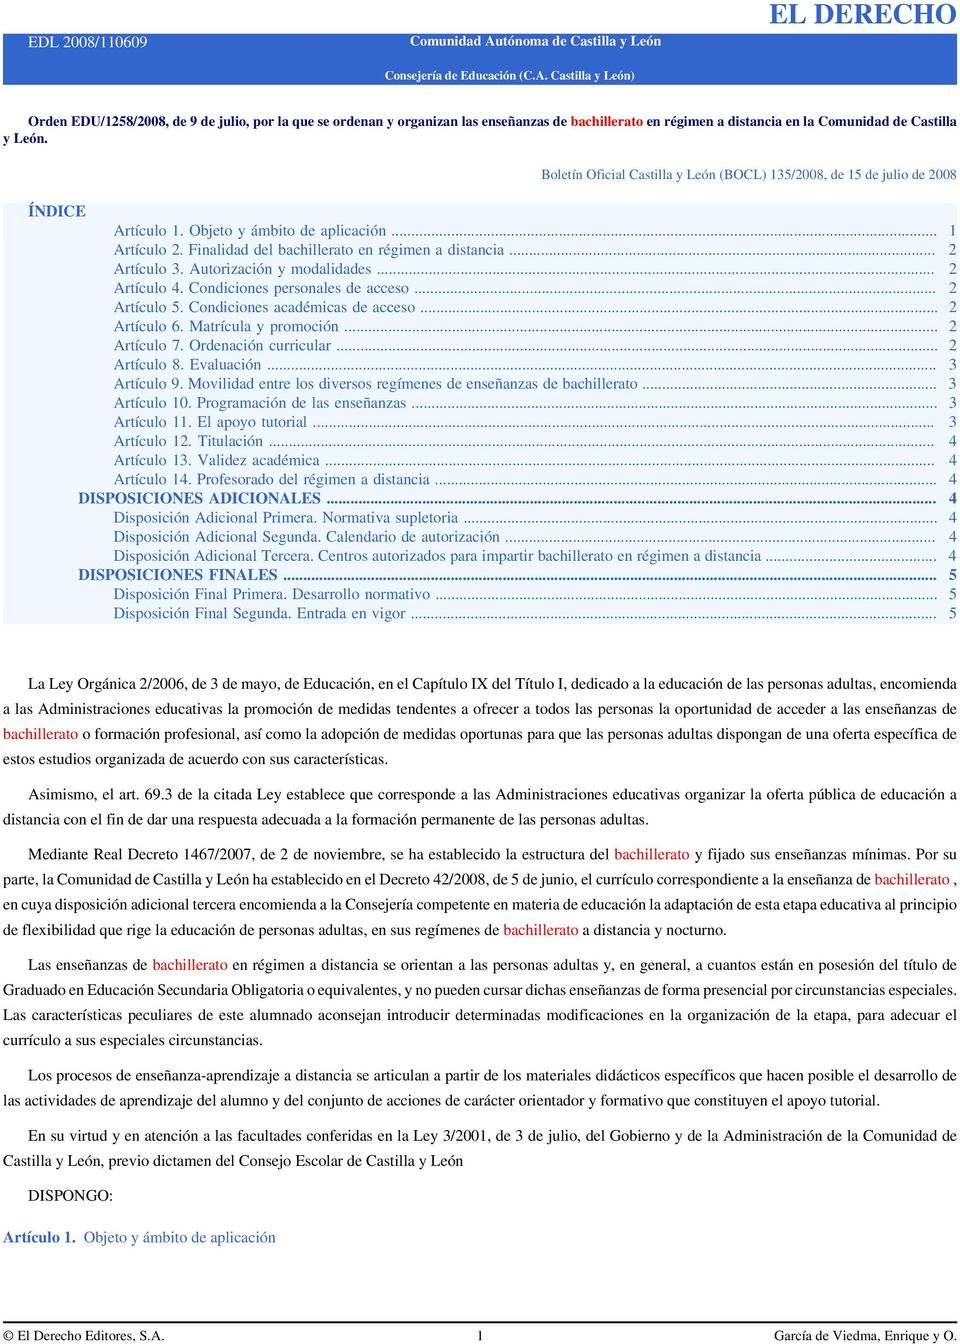 Castilla y León) EL DERECHO Orden EDU/1258/2008, de 9 de julio, por la que se ordenan y organizan las enseñanzas de bachillerato en régimen a distancia en la Comunidad de Castilla y León.